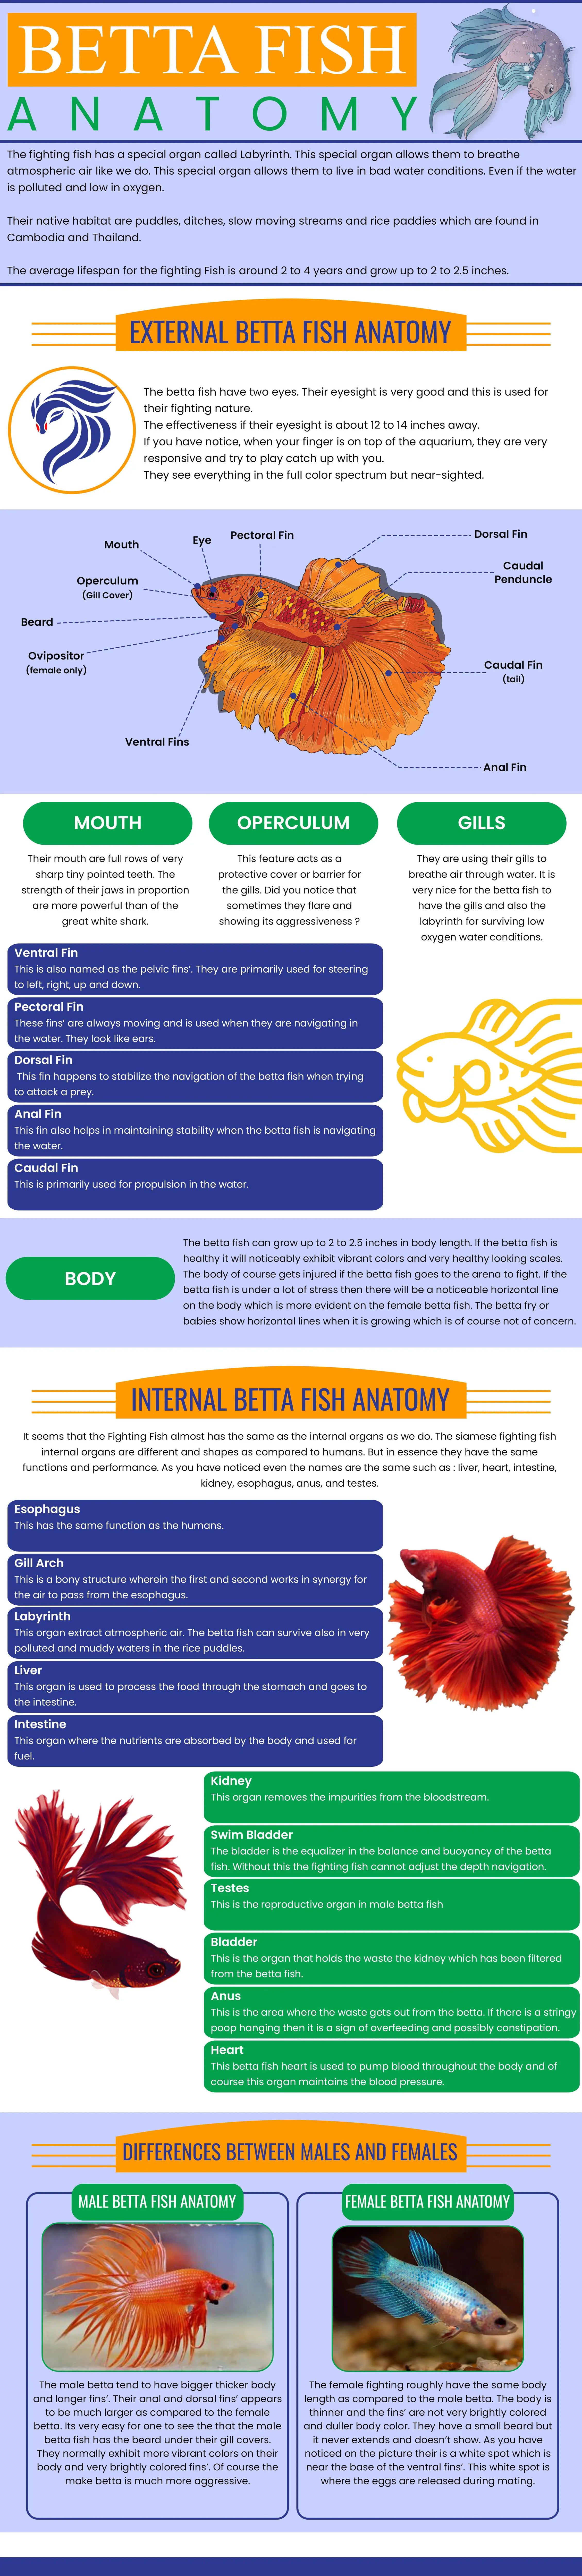 betta fish anatomy infographic